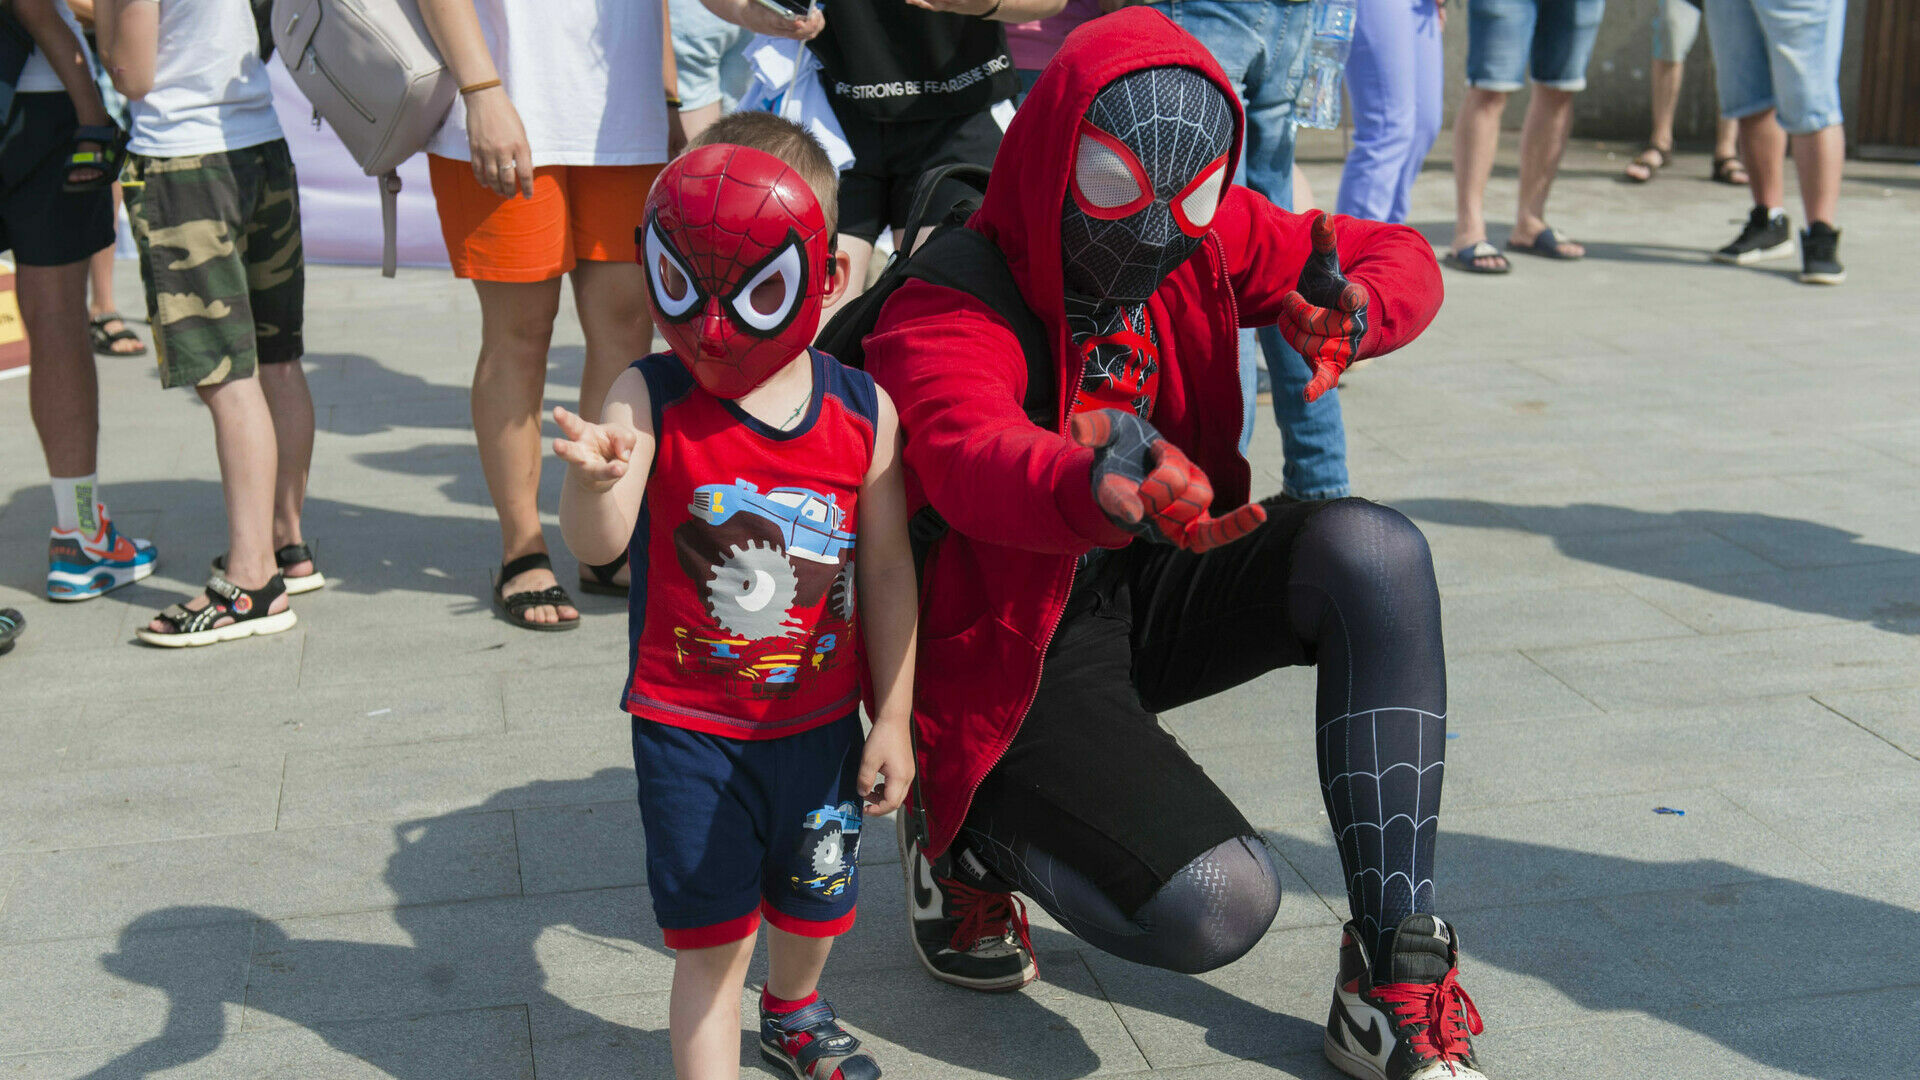 В Перми прошел Парад Супергероев. Посмотрите на них!